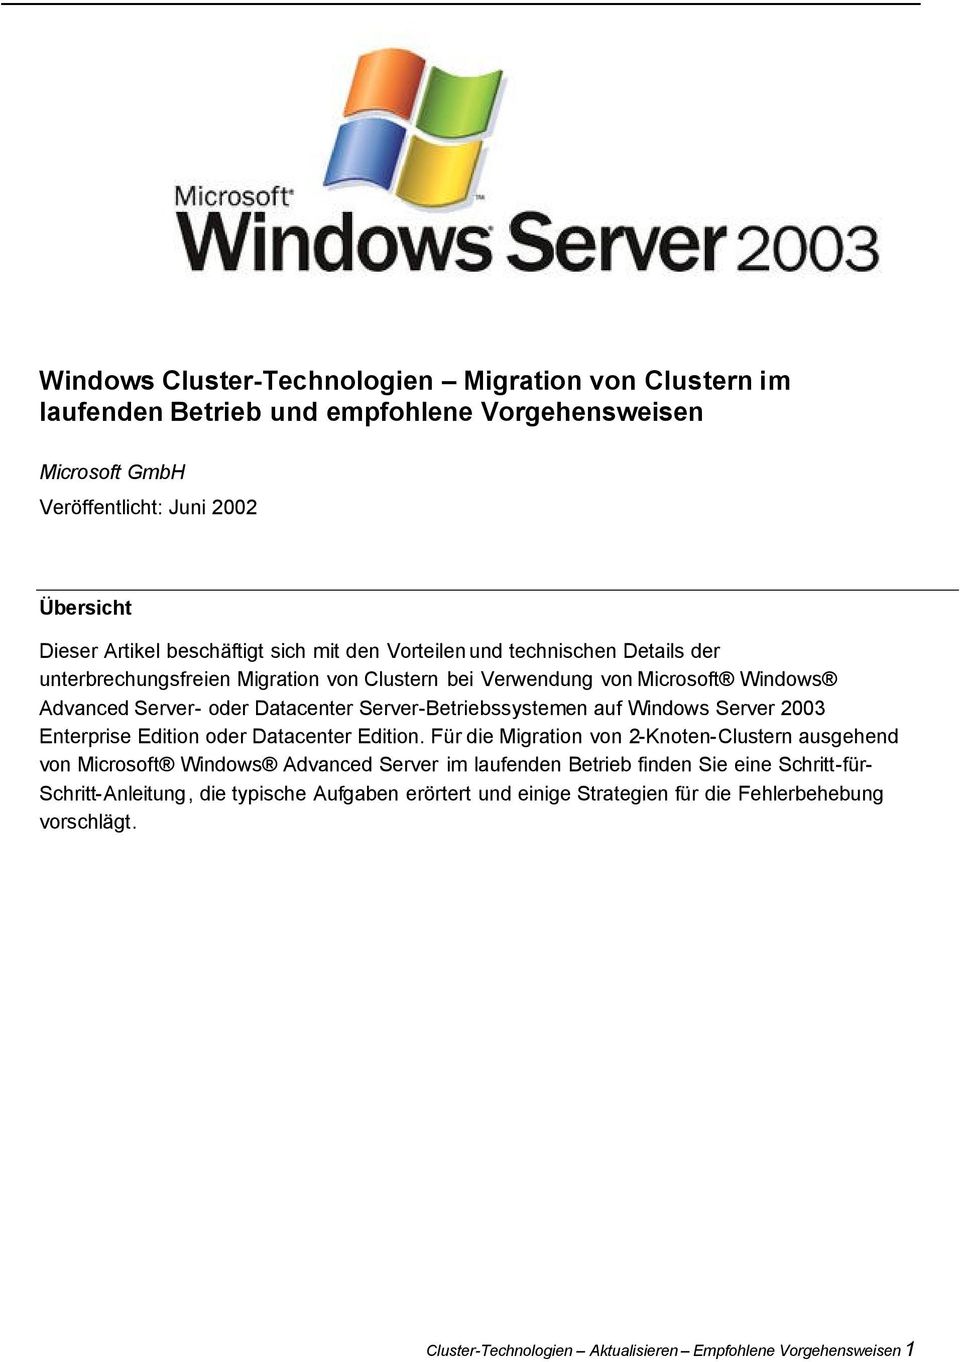 auf Windows Server 2003 Enterprise Edition oder Datacenter Edition.